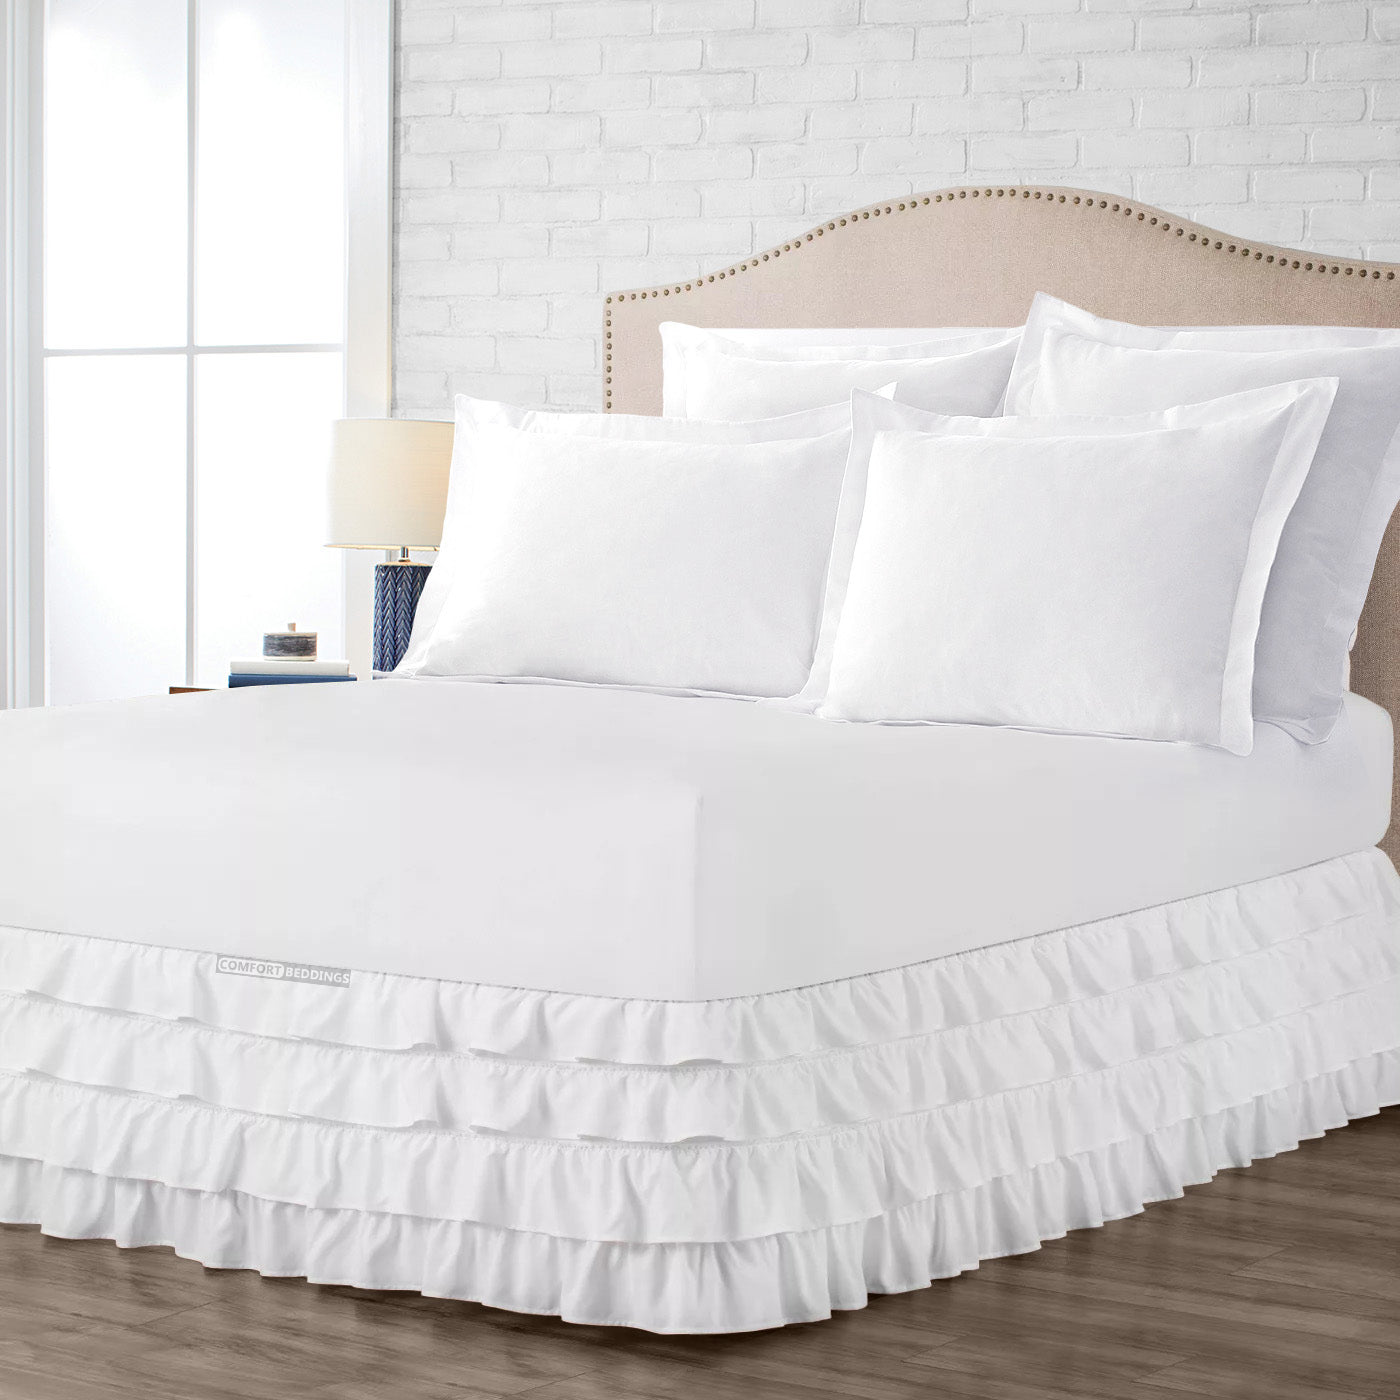 Luxury White Waterfall Ruffled Bed Skirt